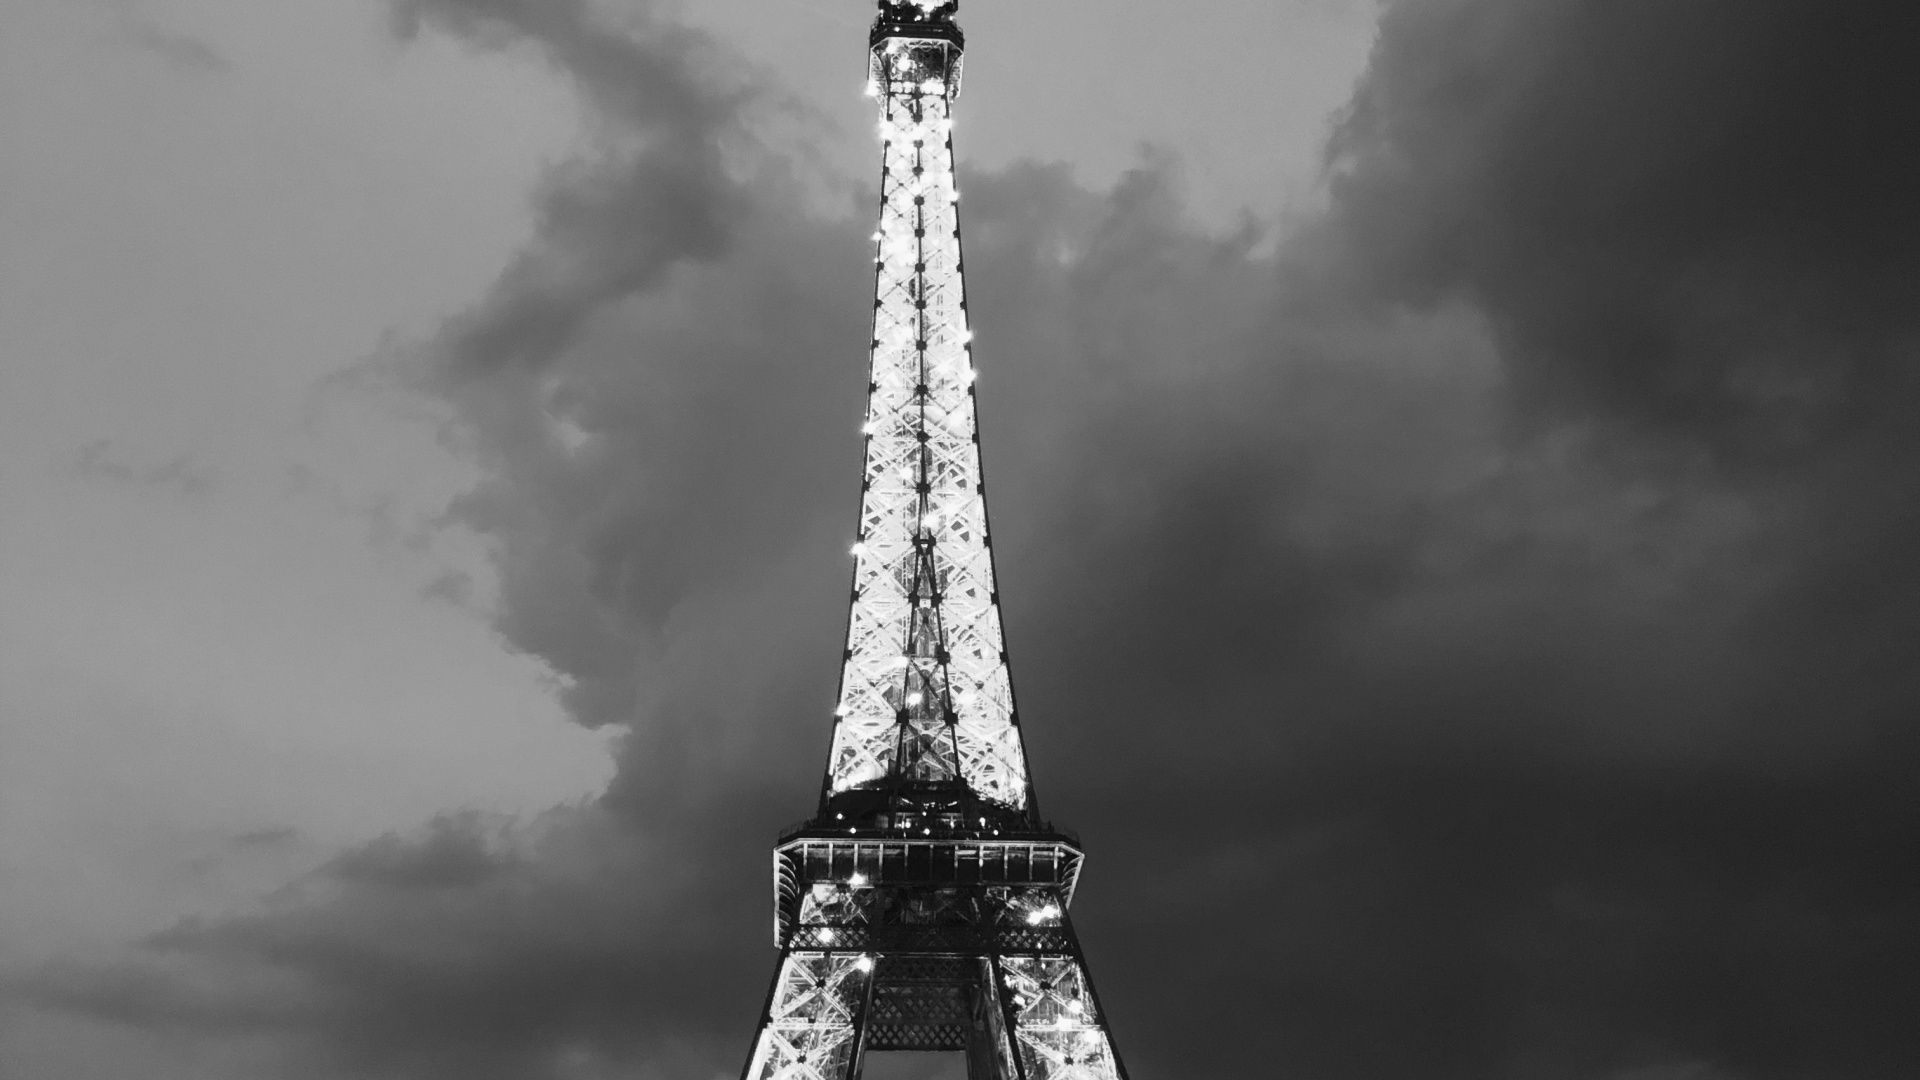 Tour Eiffel, Noir et Blanc, Atmosphère, Architecture, Tourisme. Wallpaper in 1920x1080 Resolution